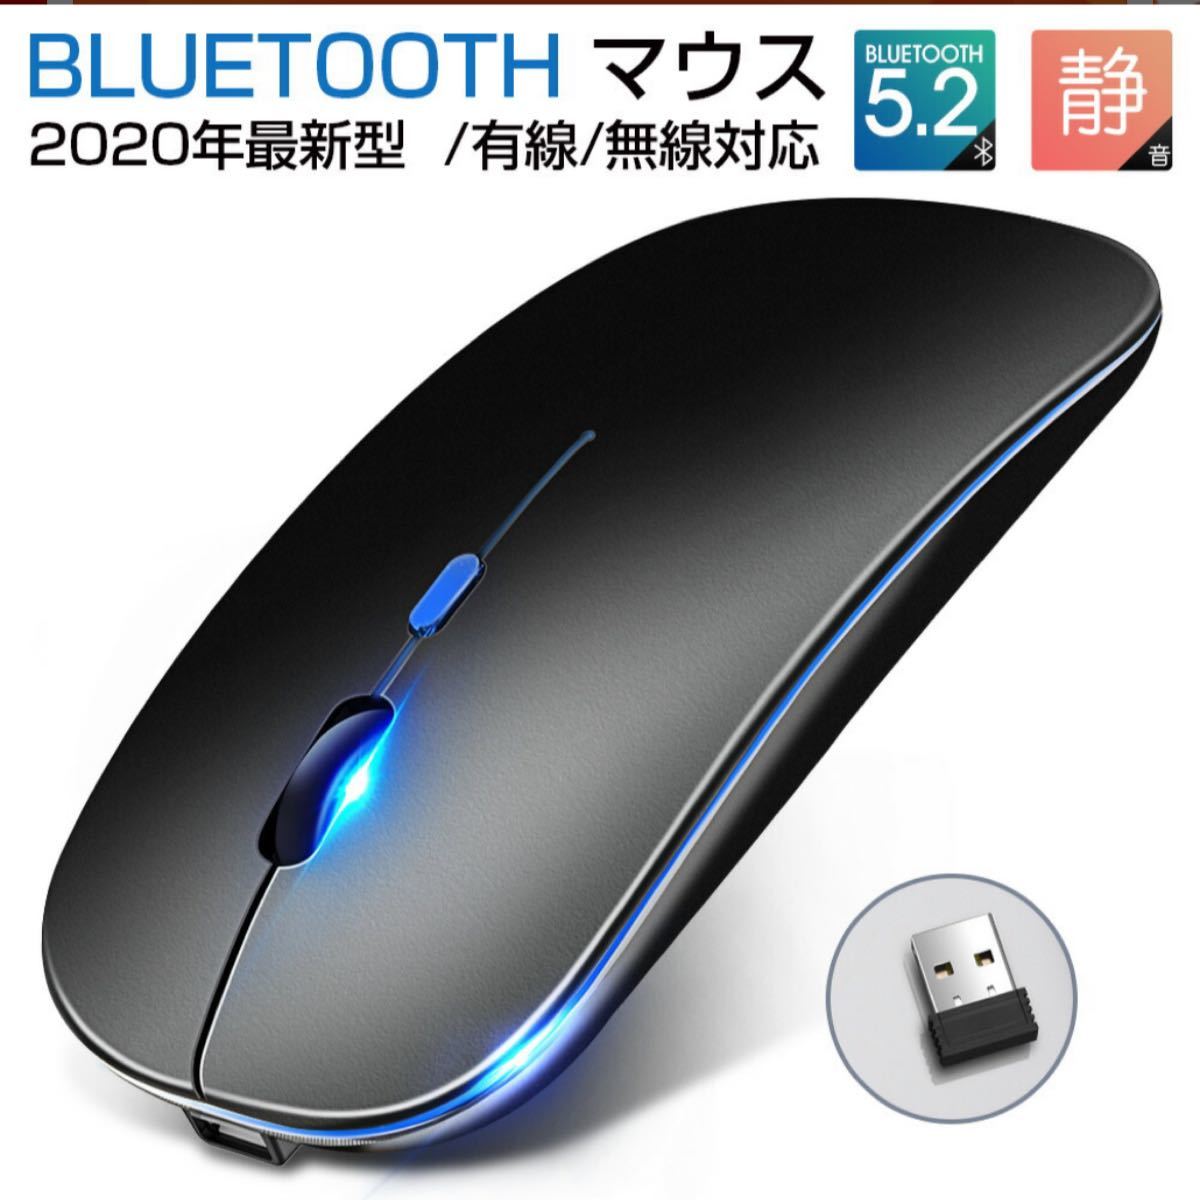 ワイヤレスマウス USB充電式 Bluetooth 薄型 静音 3段調節可能